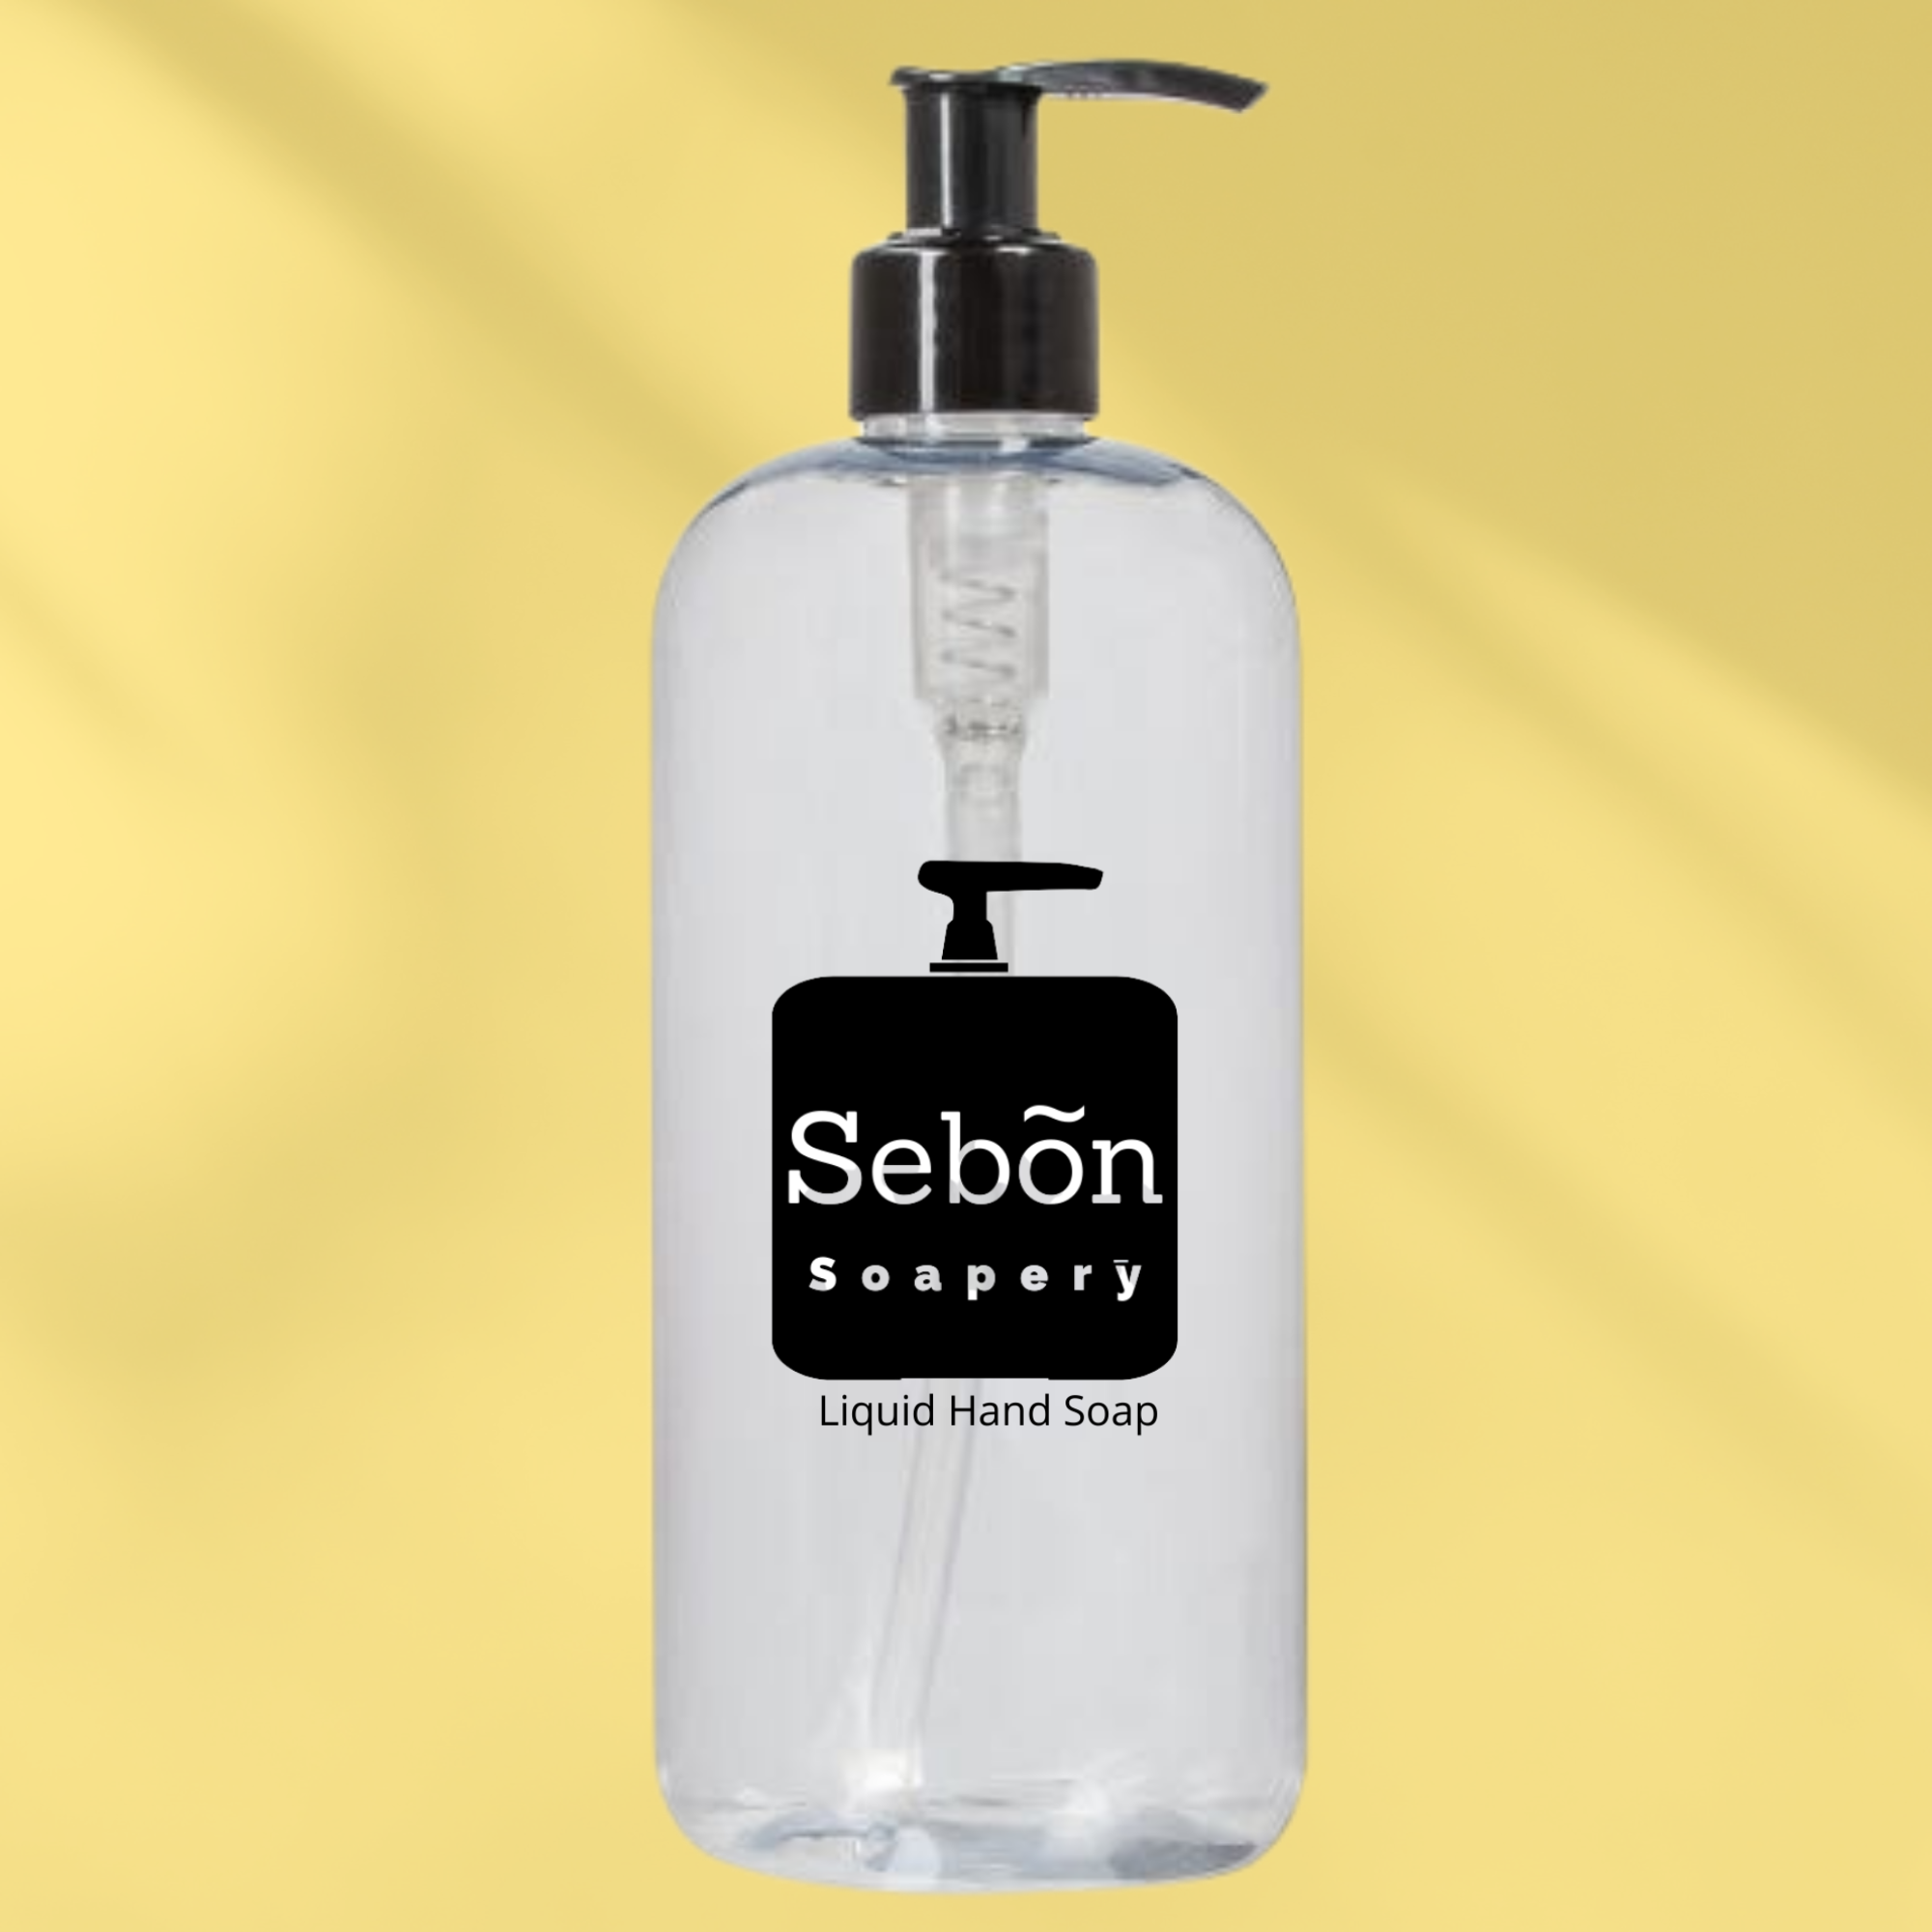 Sebon Vanilla & Sugared Apricot Scented Liquid Hand Soap with Olive Oil